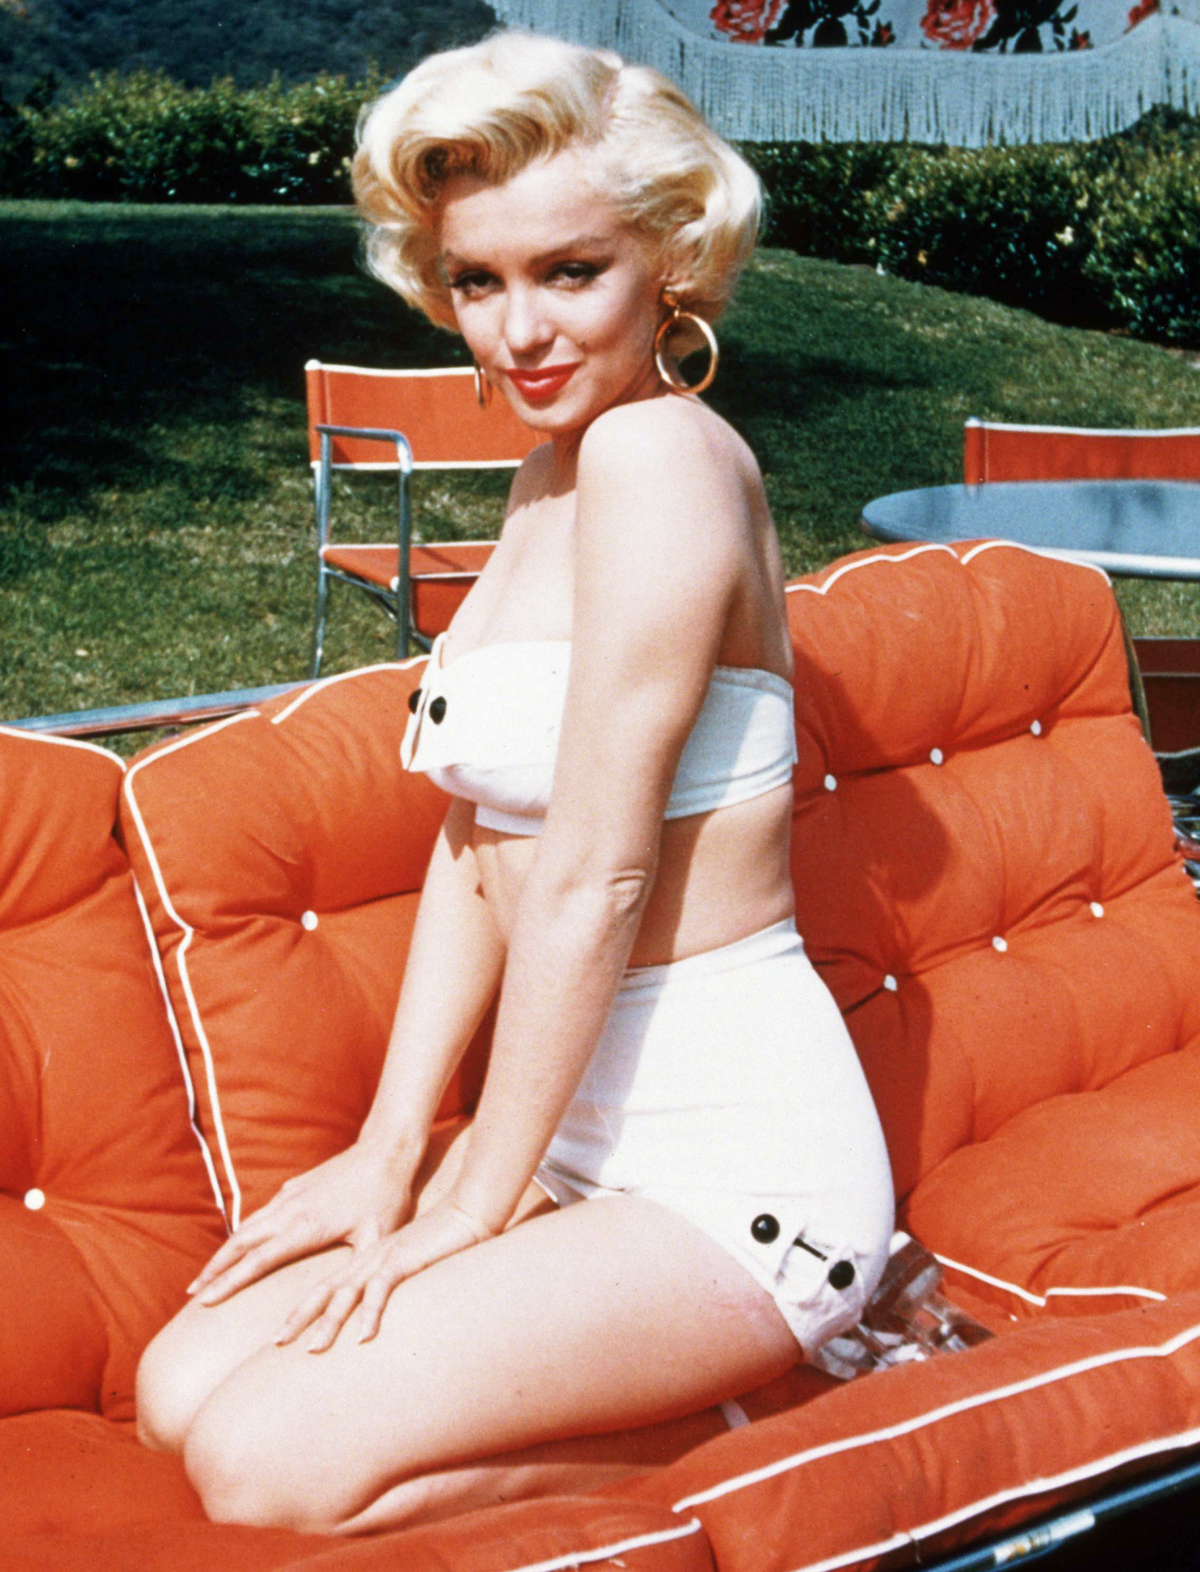 Marilyn Monroe iconic swimsuit